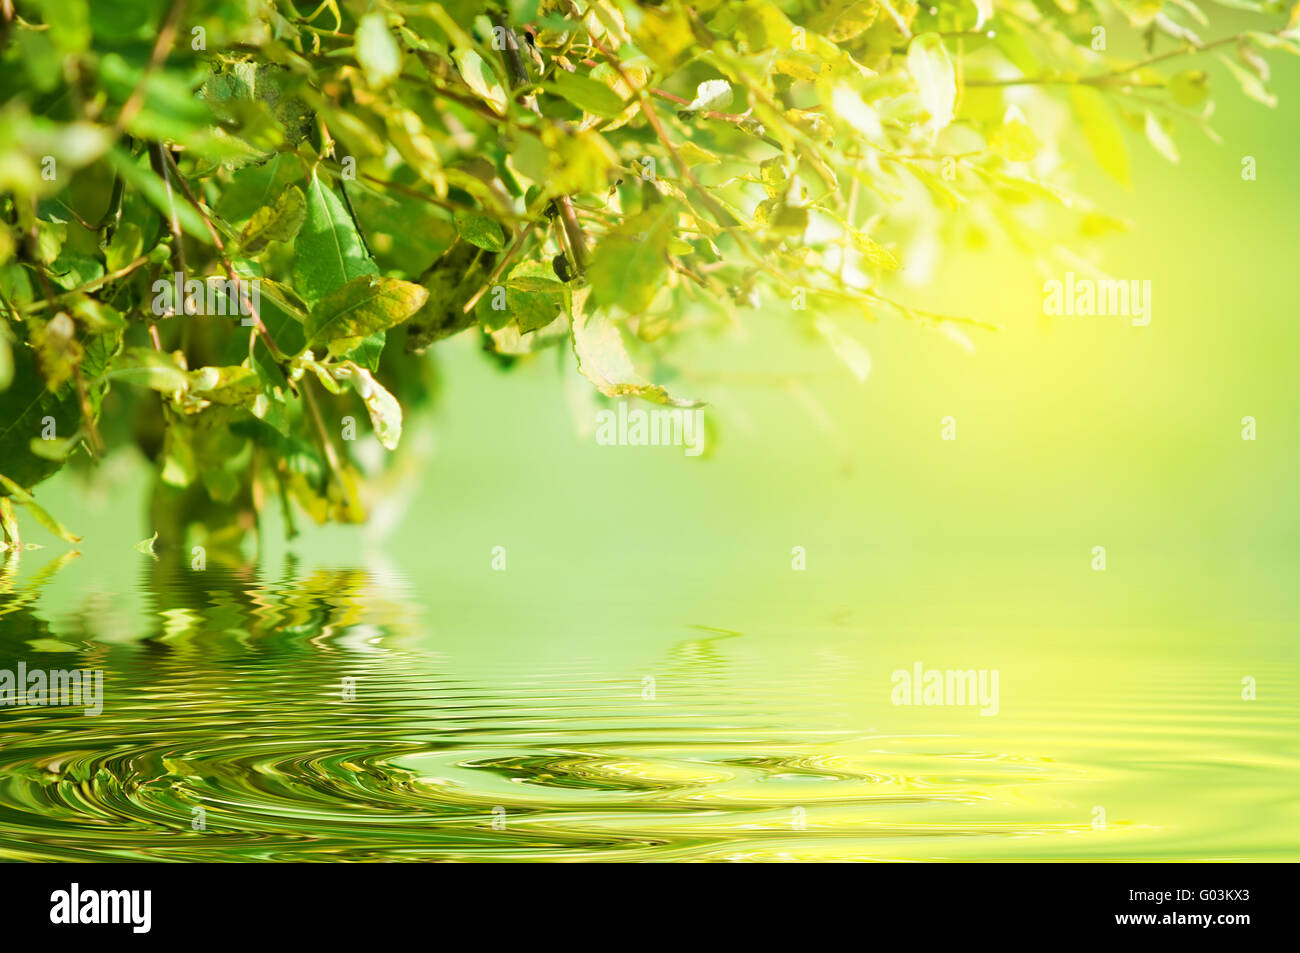 Natur-grünen Hintergrund. Wasserreflexion und Sonne durch die Blätter Stockfoto